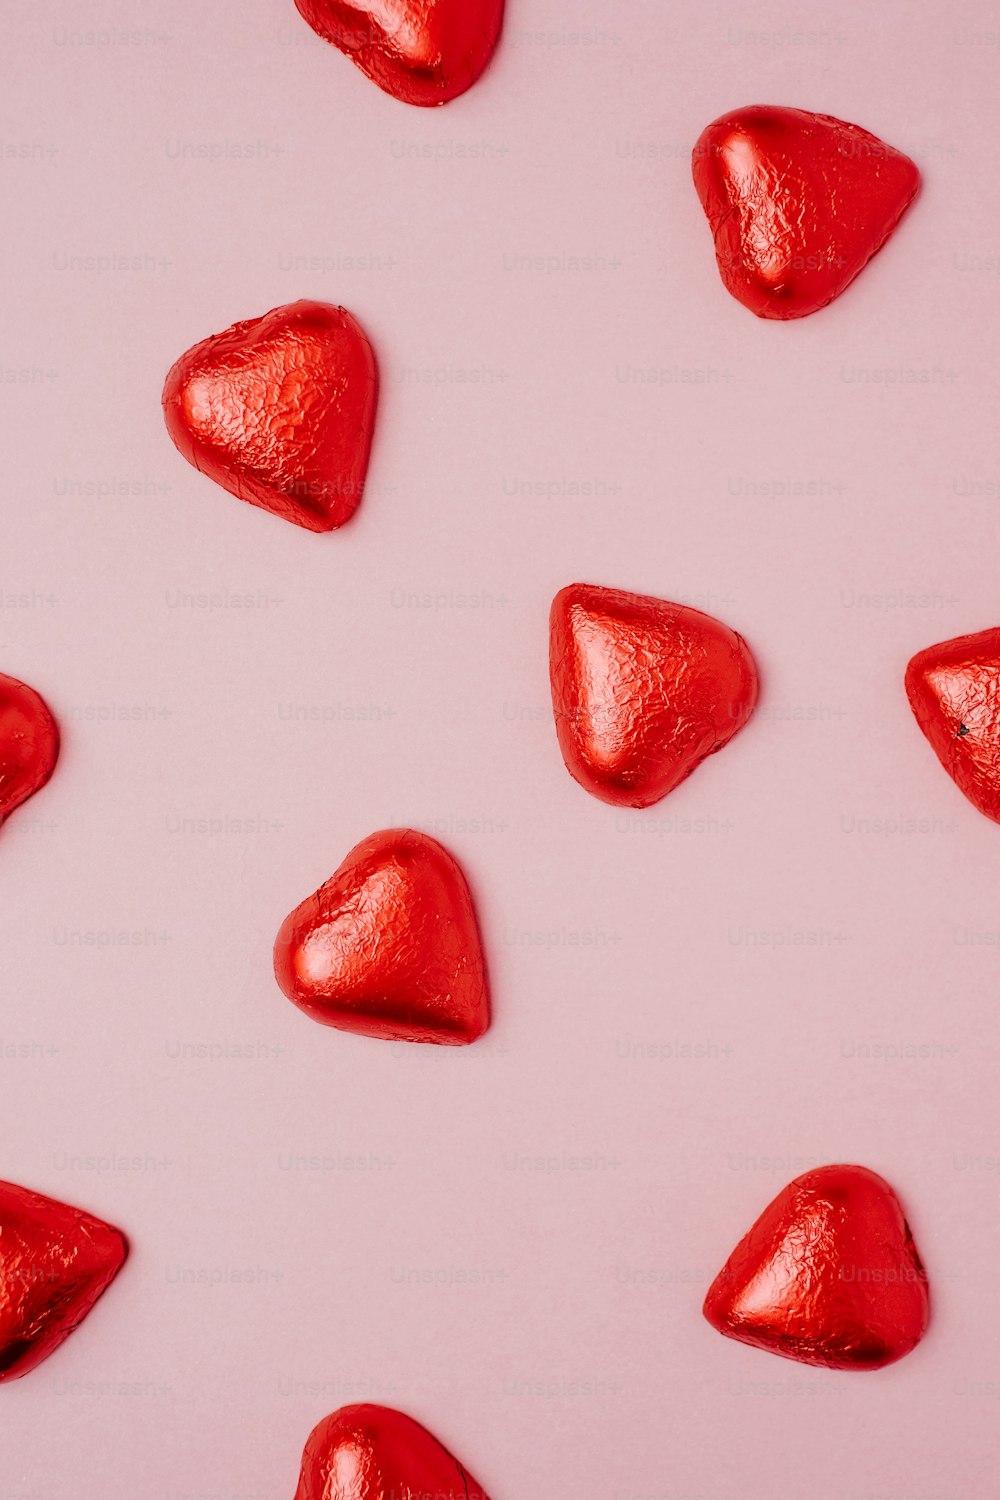 Un gruppo di caramelle rosse a forma di cuore su uno sfondo rosa